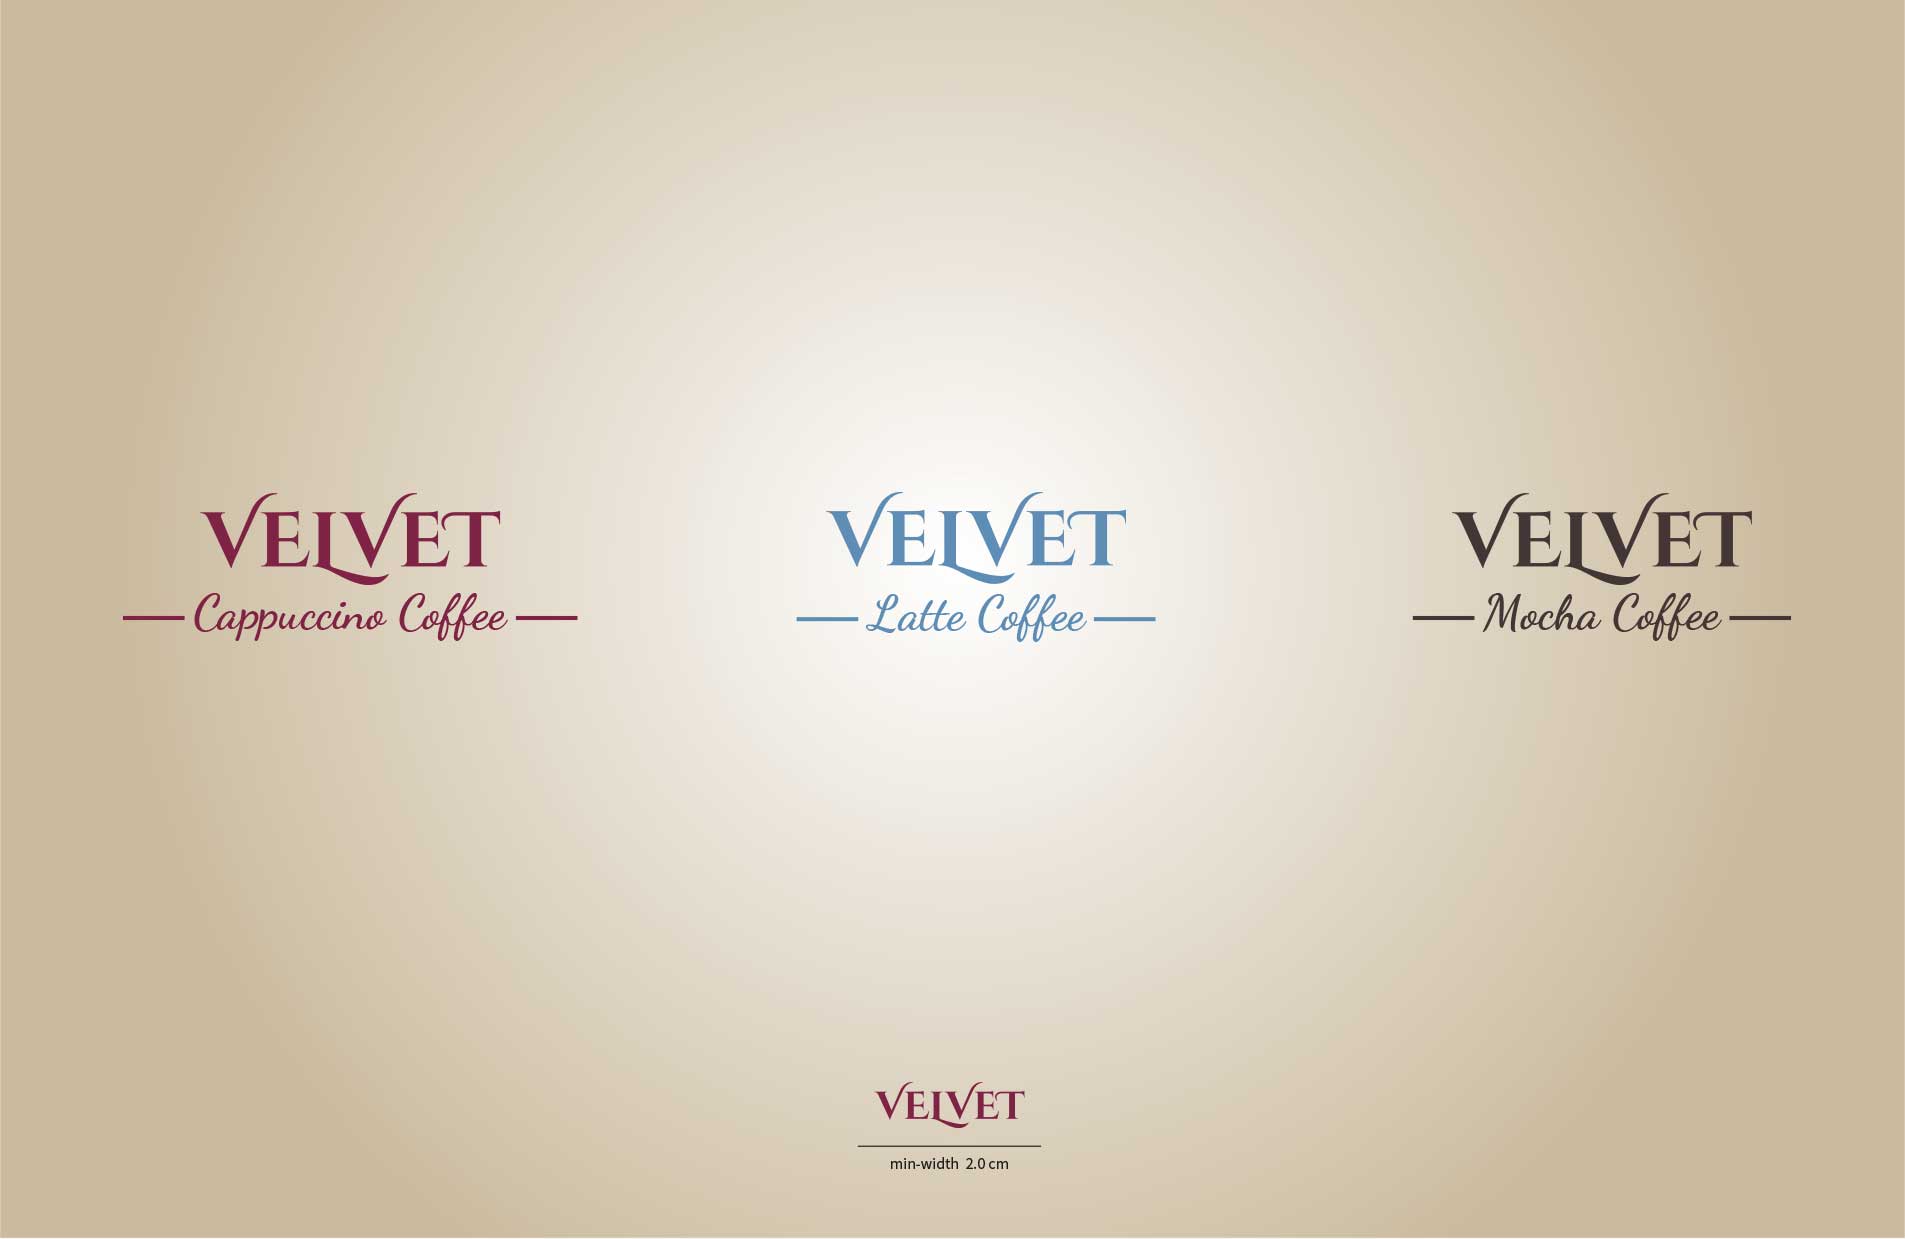 velvet product design logos